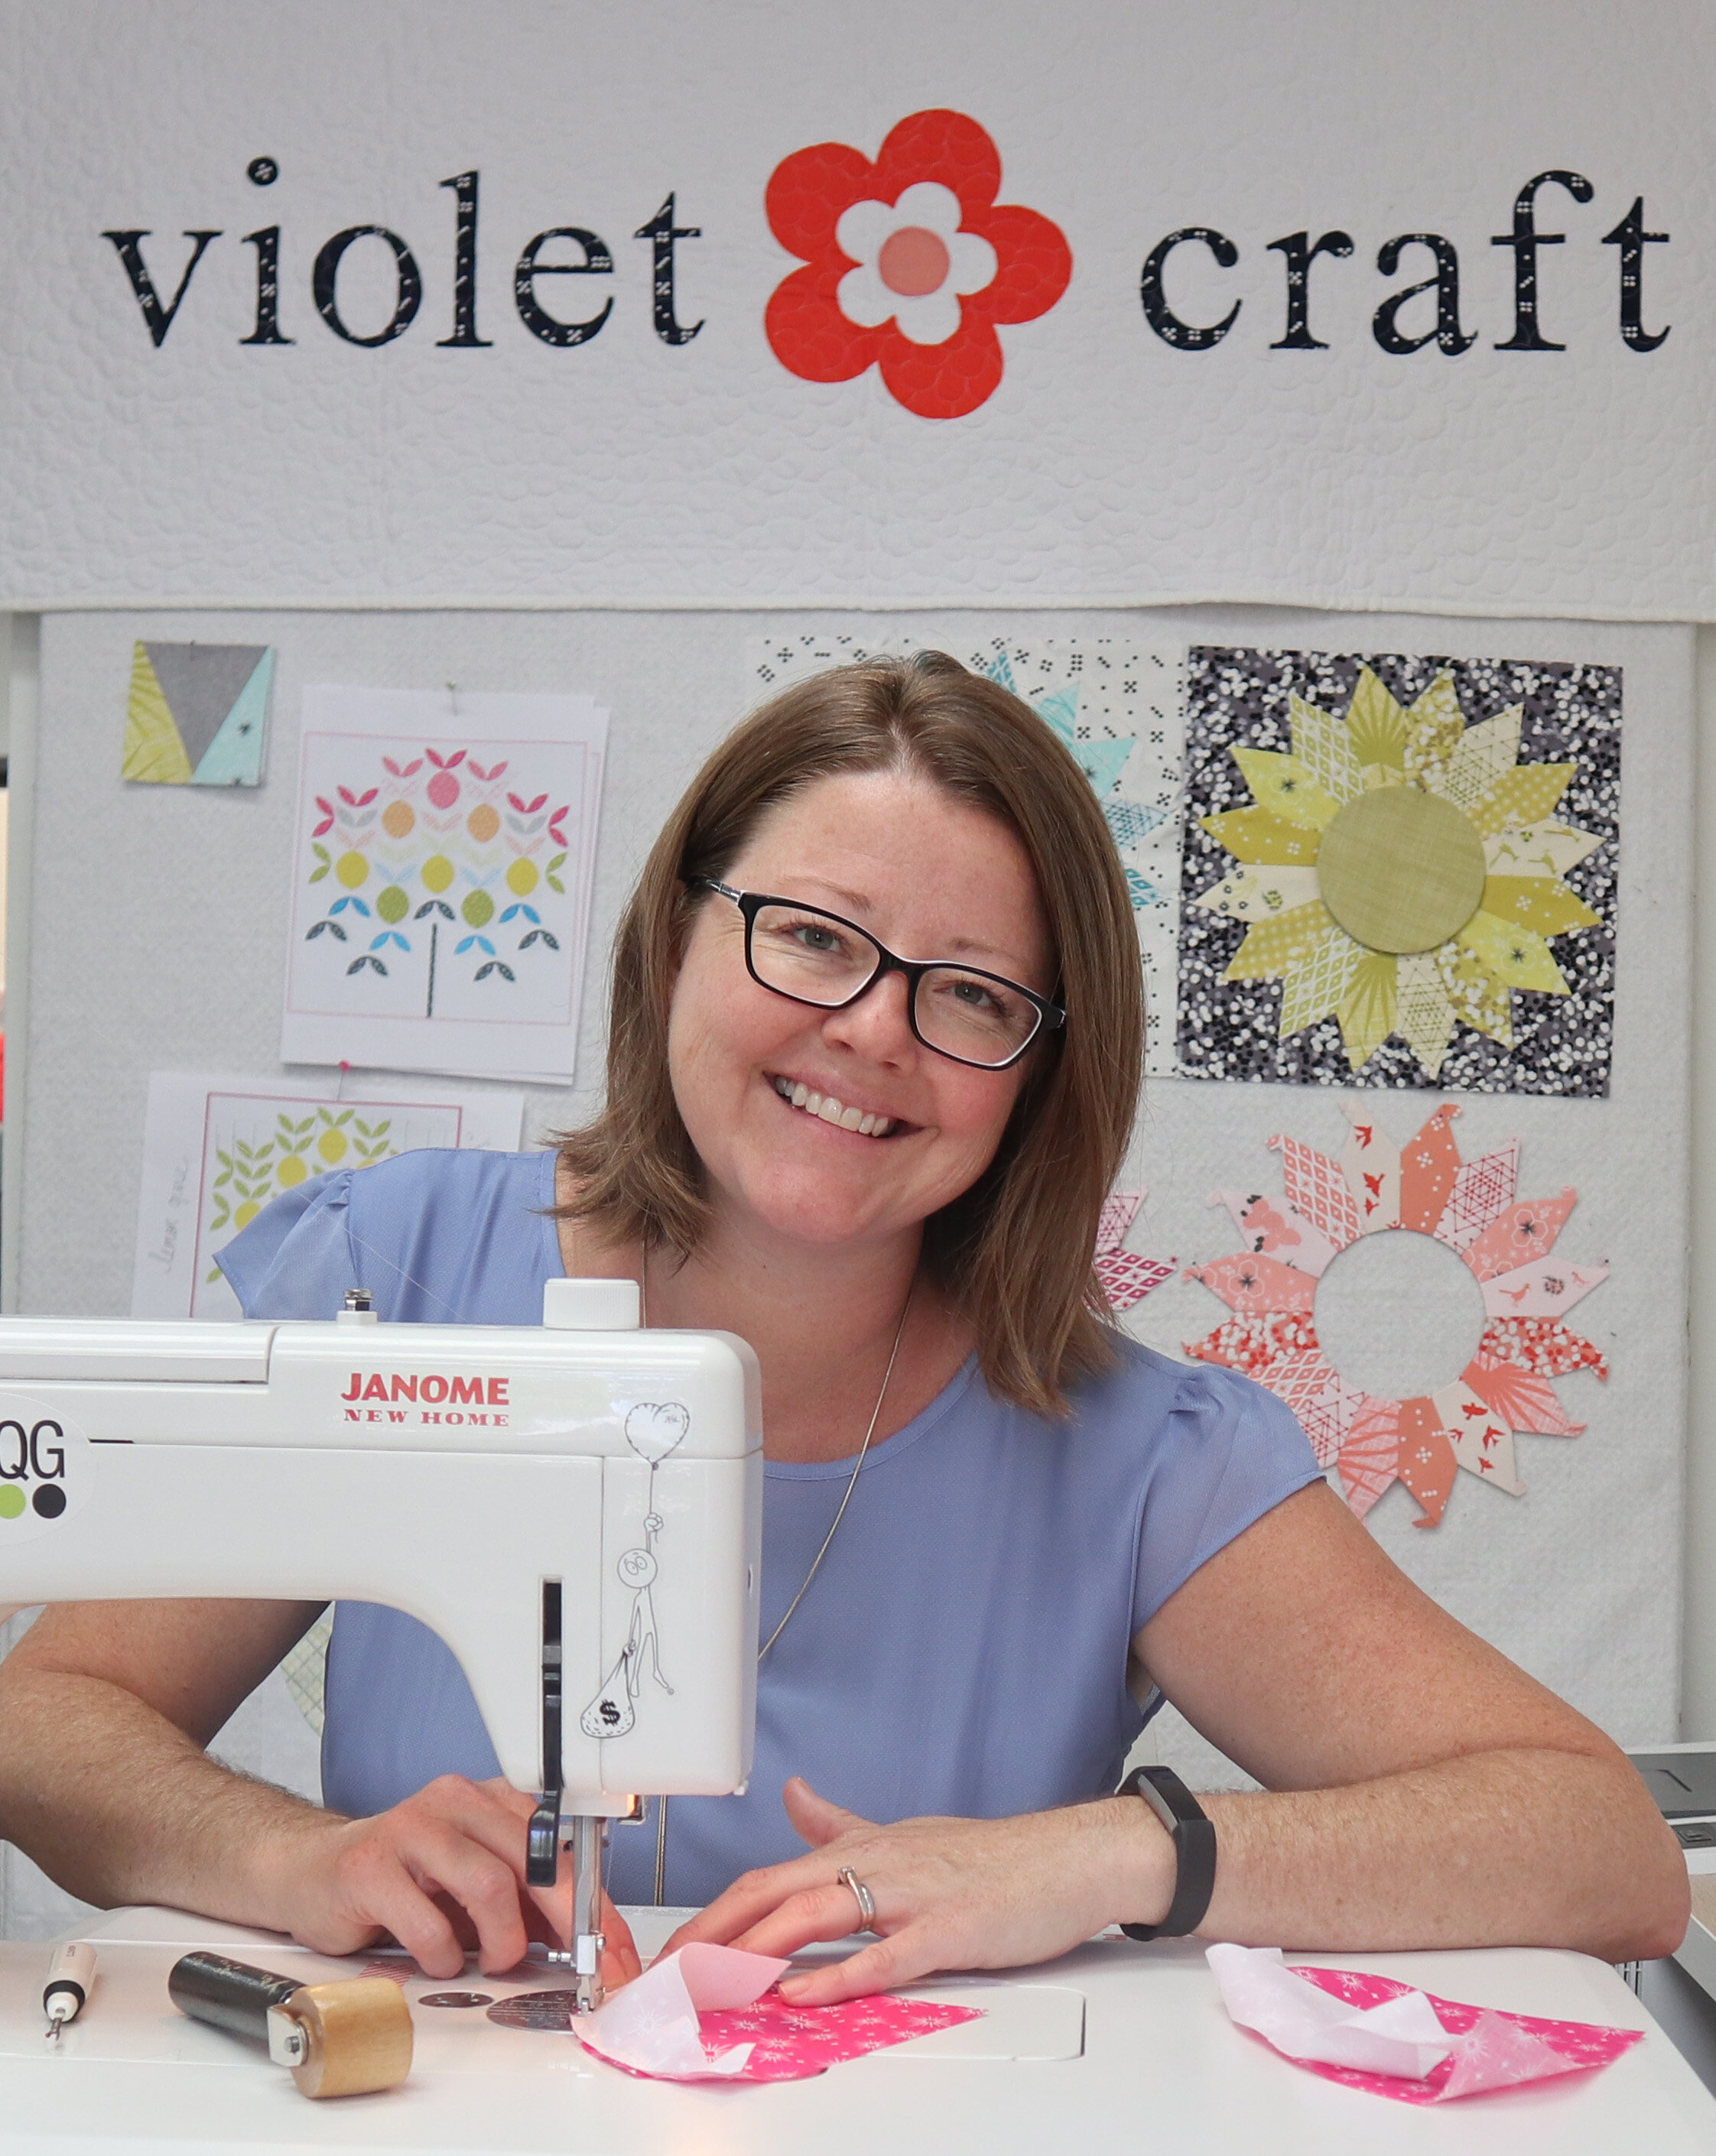 Violet Craft Seam Roller — Violet Craft